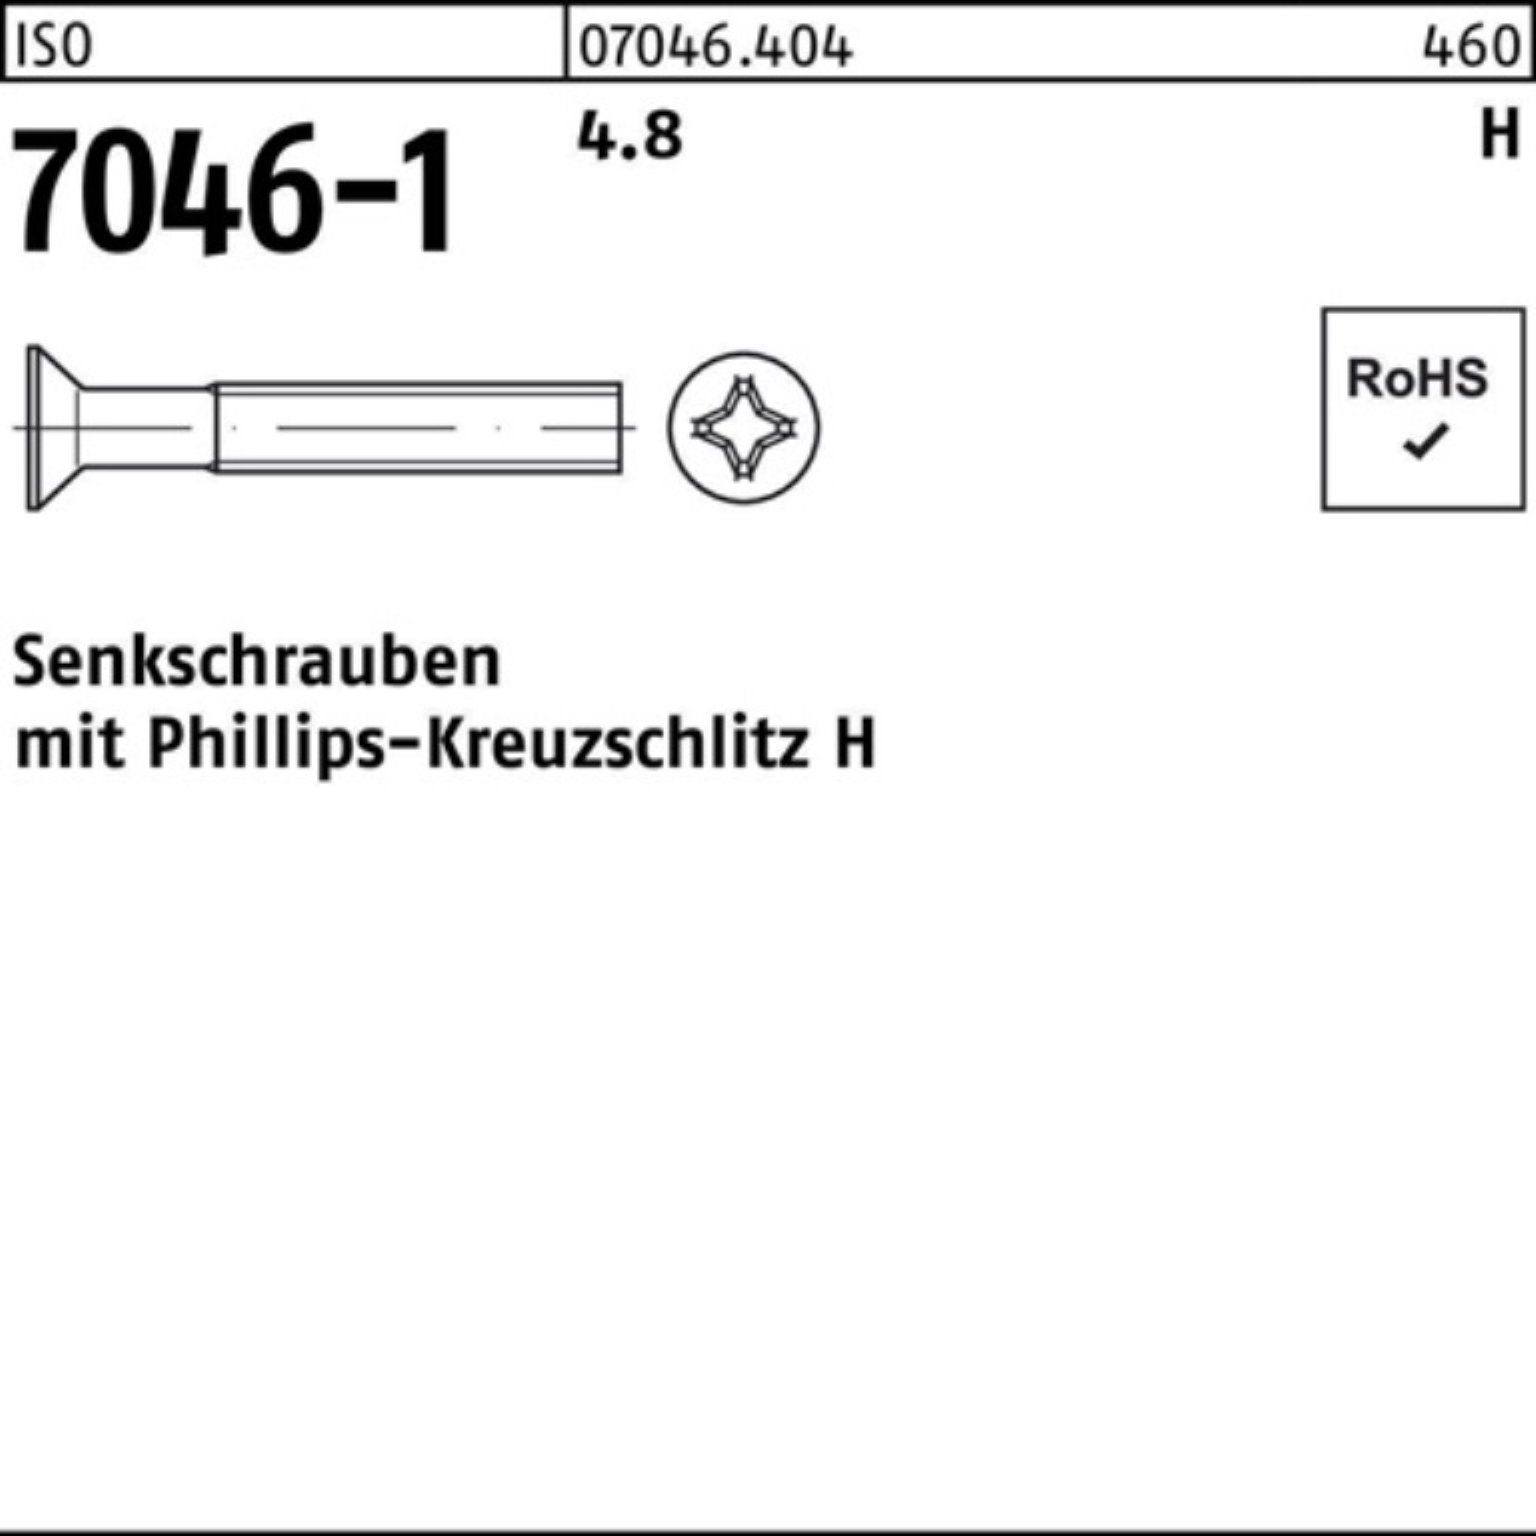 M5x Reyher 40-H Pack Senkschraube 4.8 PH 500er 7046-1 ISO Stück 500 ISO 7046 Senkschraube